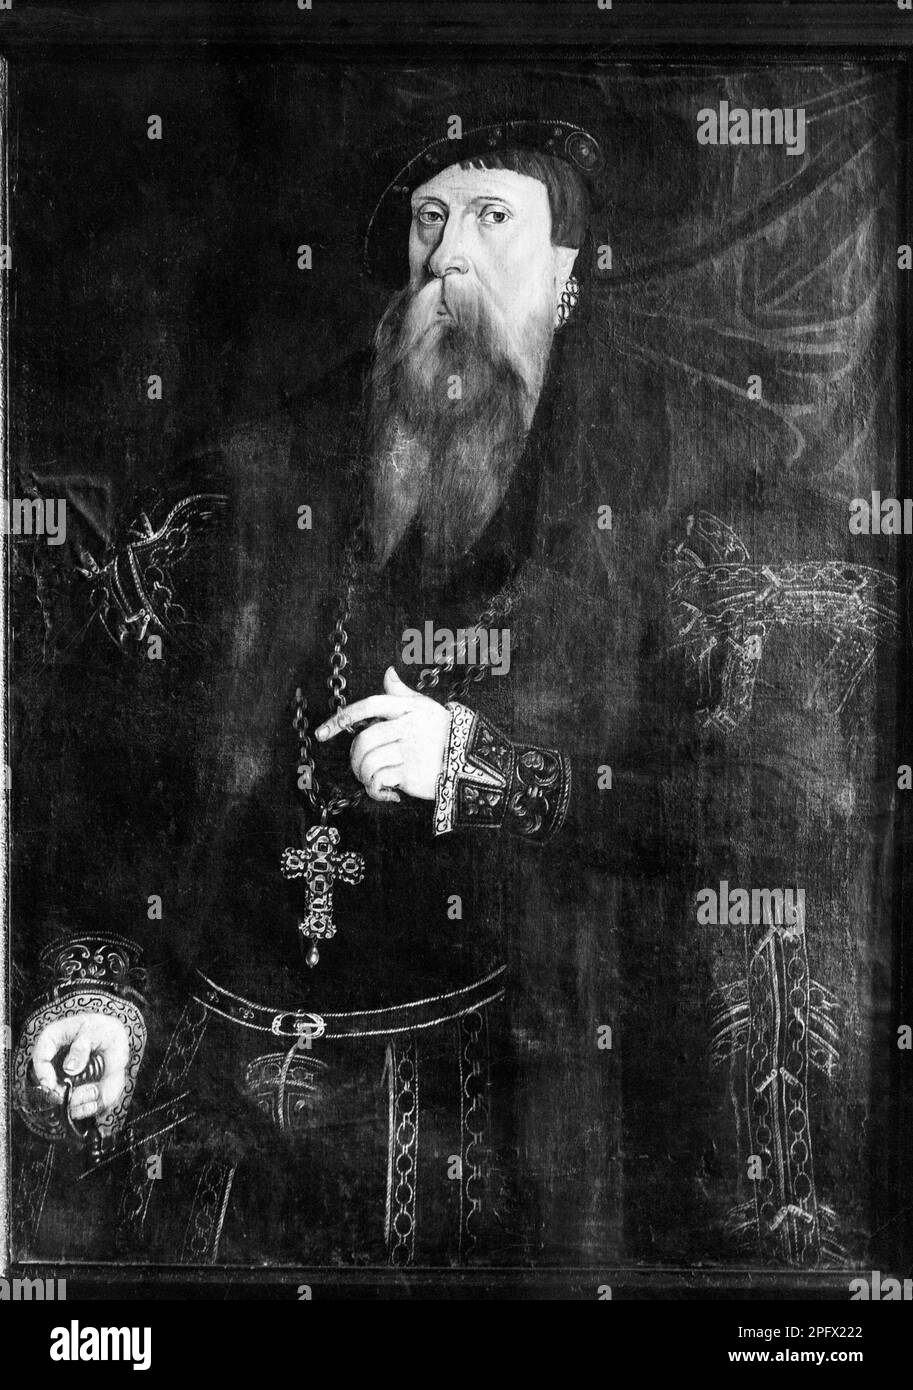 Gustav Vasa, Gustav Eriksson. 12 maggio 1496 - 29 settembre 1560. Re Gustav i di Svezia della nobile famiglia Vasa. foto b/n di un dipinto di un artista sconosciuto. Foto Stock